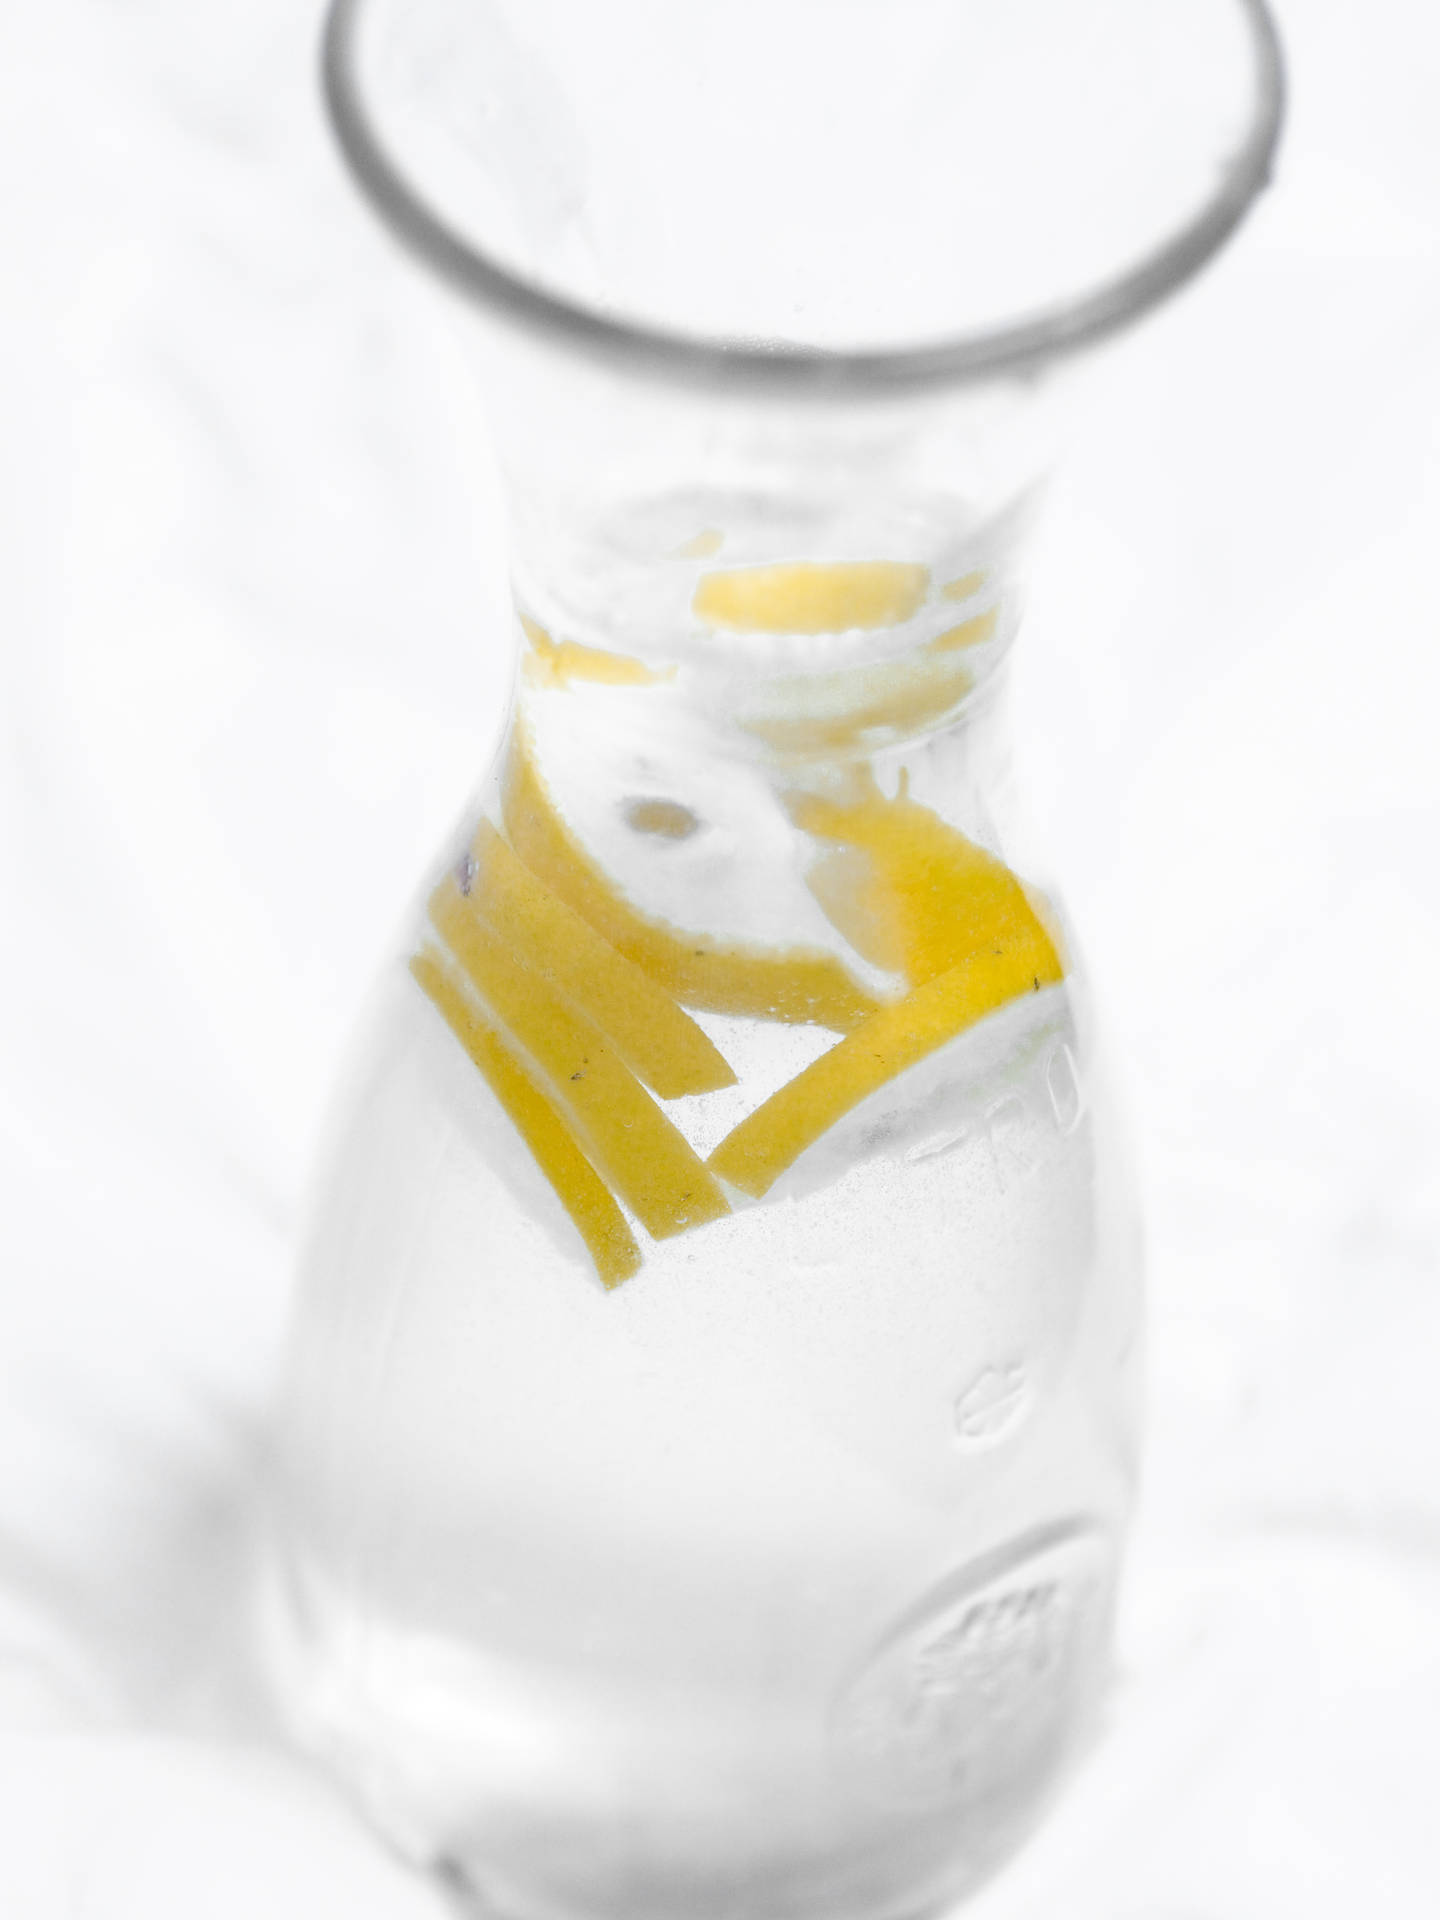 Lemon & Water Pinterest